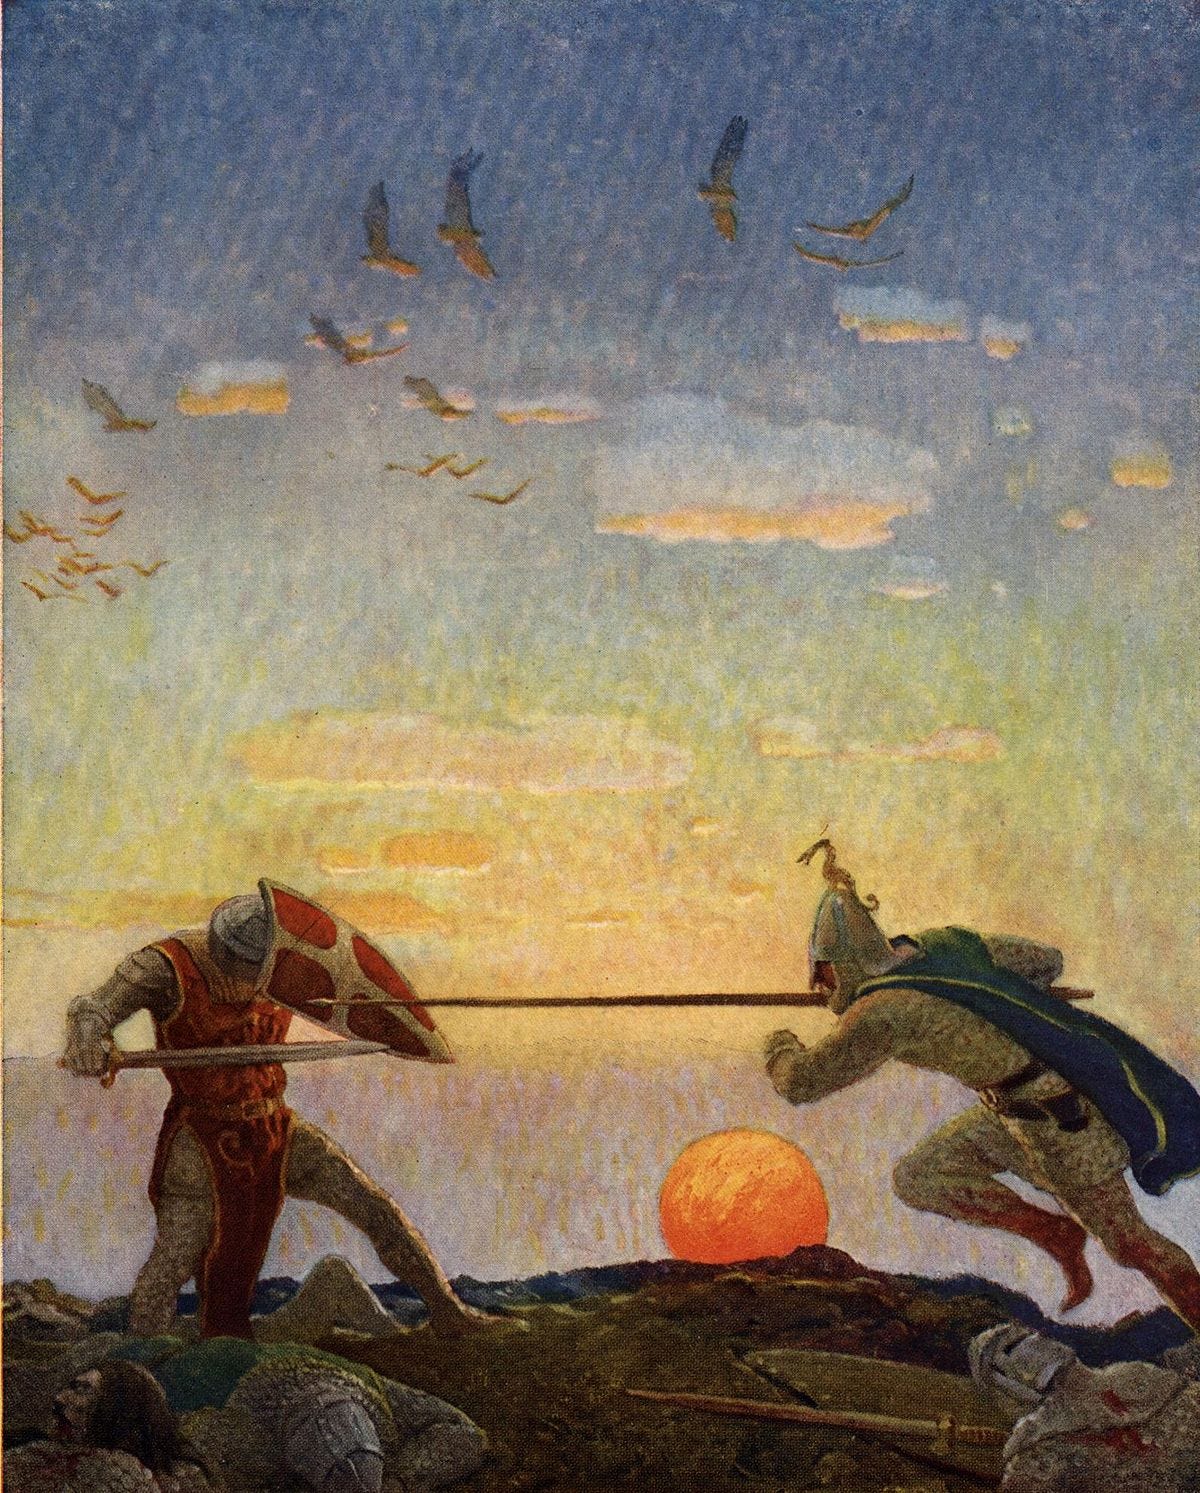 File:Boys King Arthur - N. C. Wyeth - p306.jpg - Wikipedia